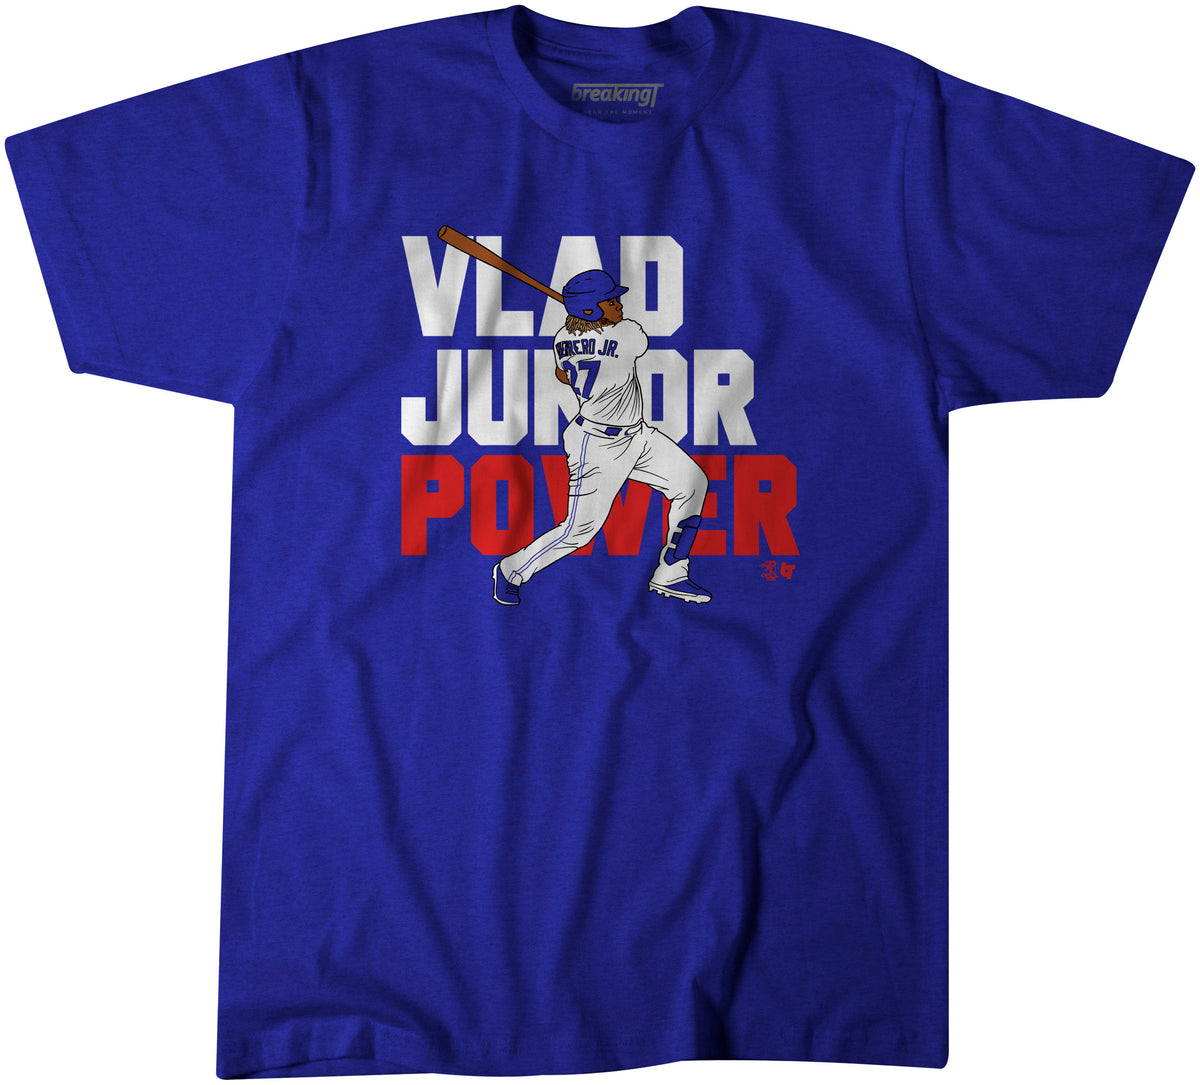 Vlad Junior Power, 3XL - MLB - Blue - Sports Fan Gear | breakingt